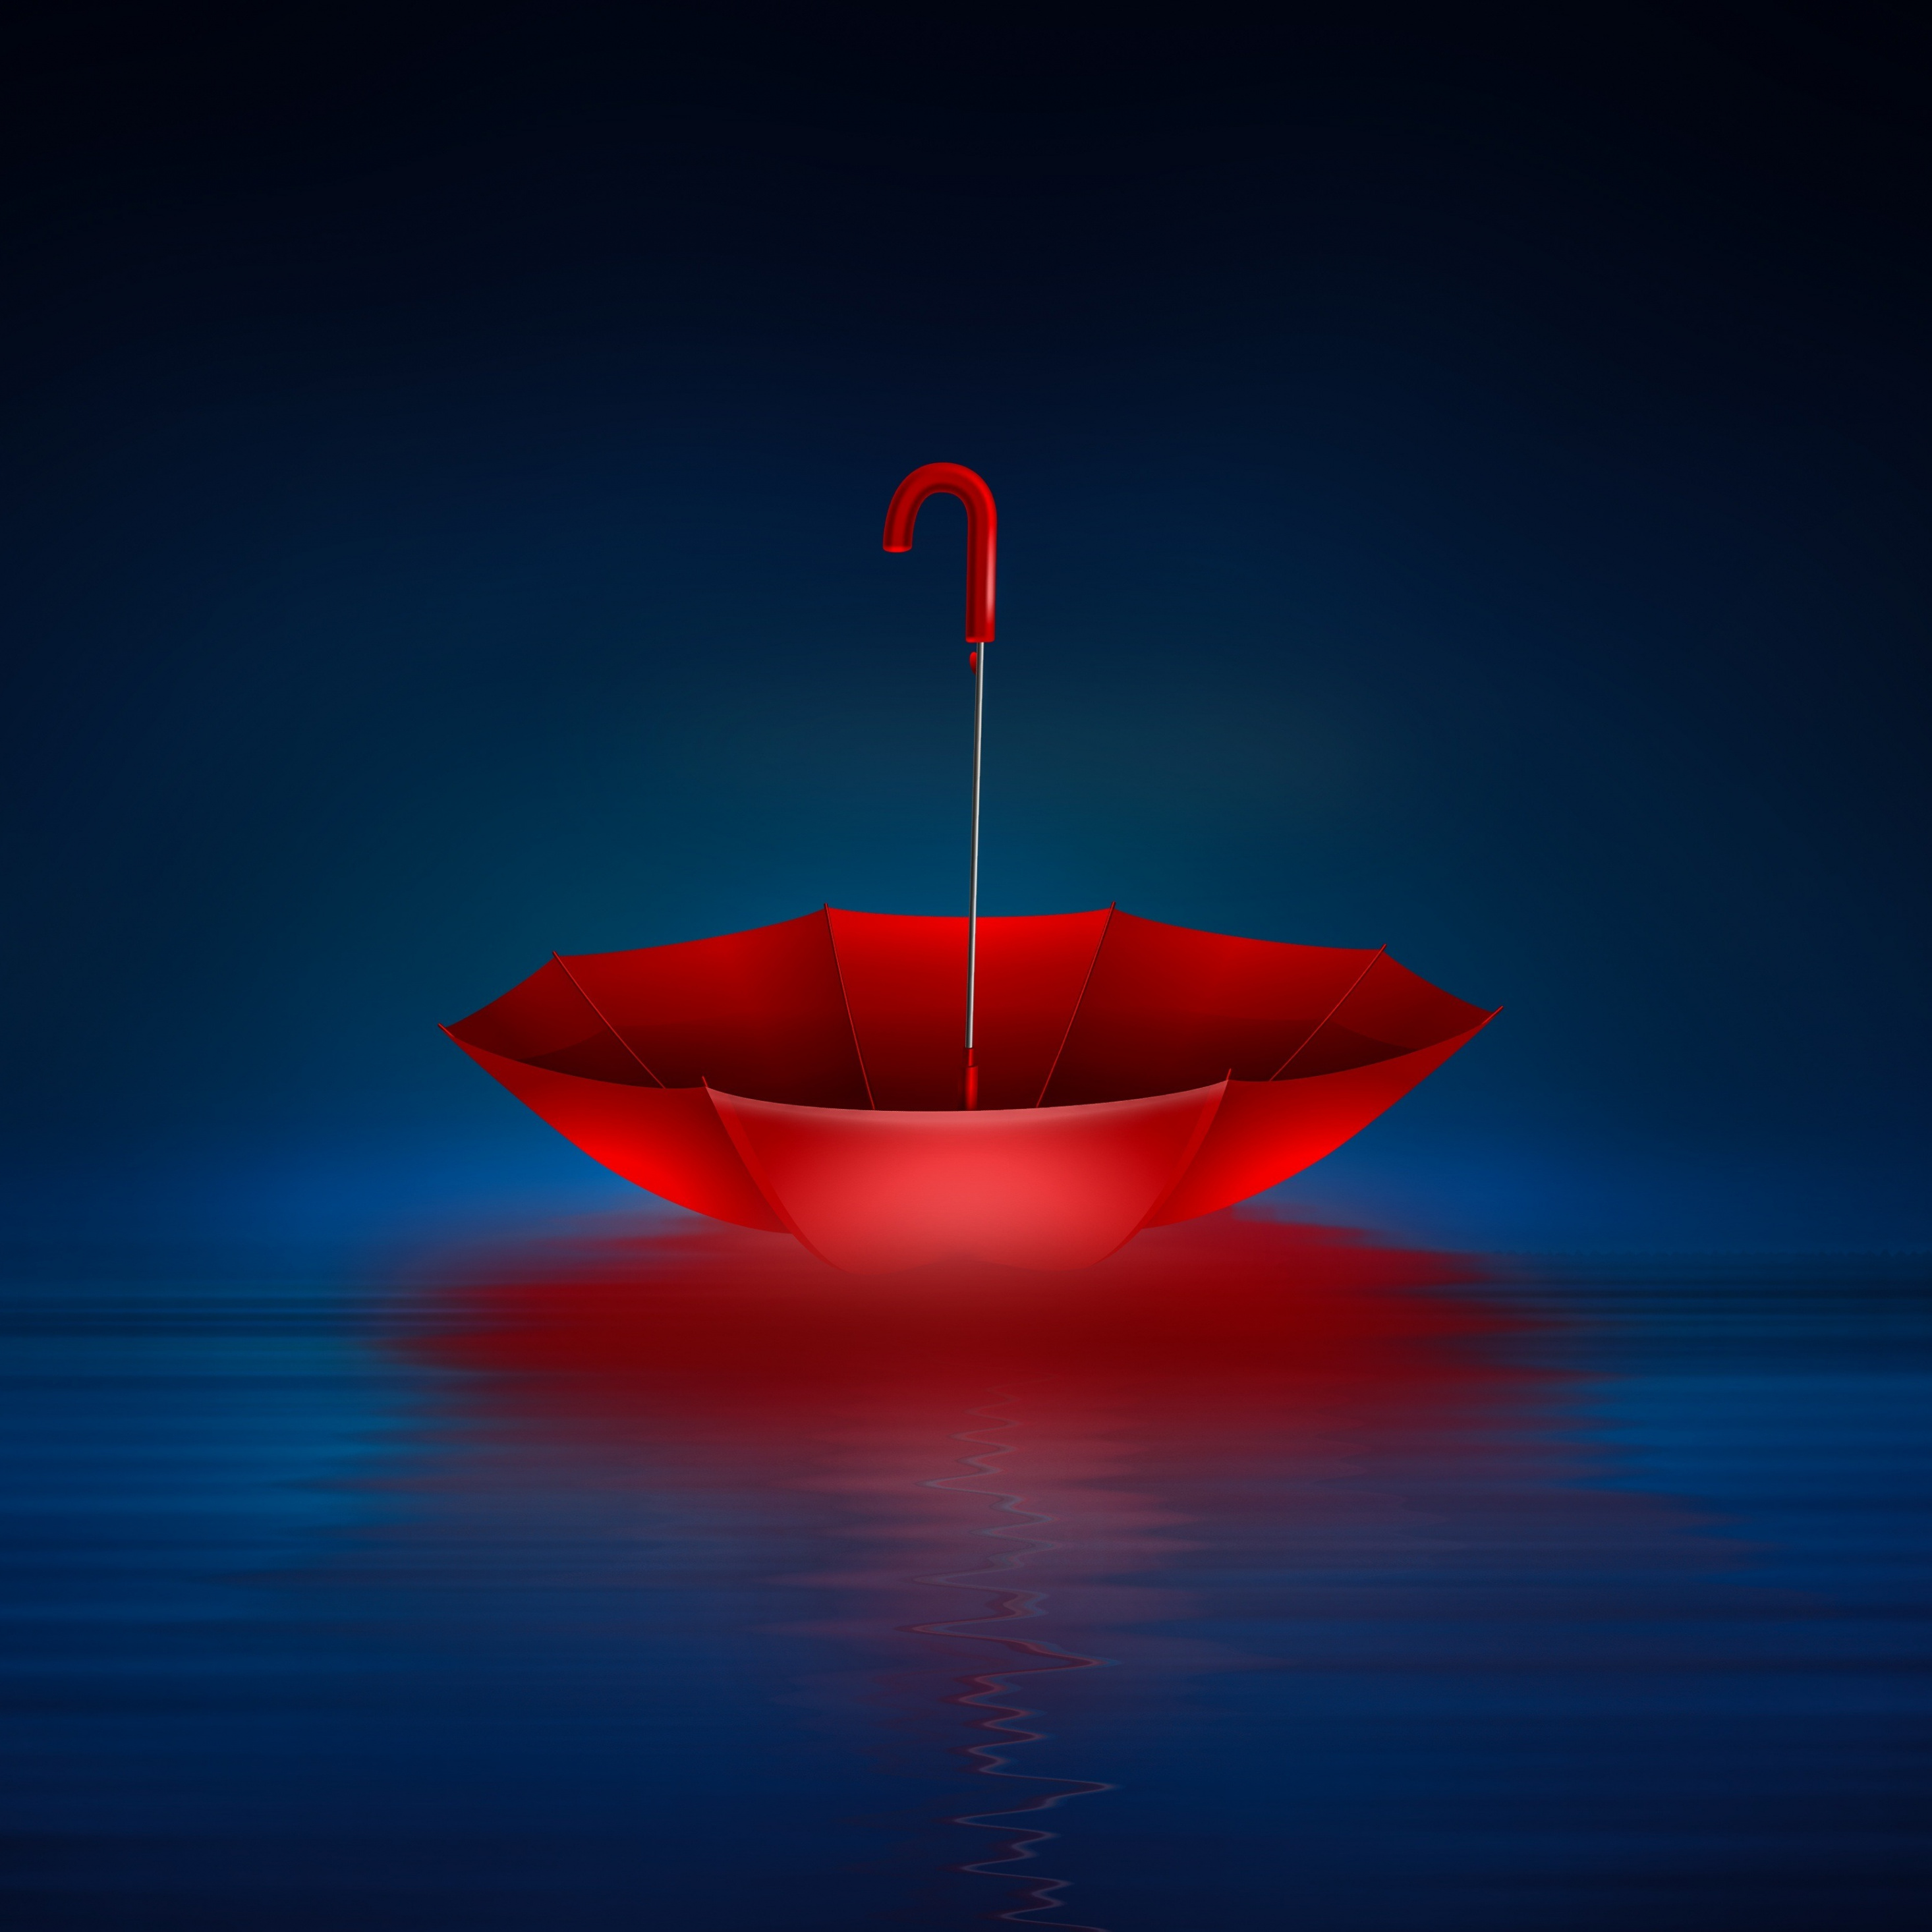 Red, Umbrella, Reflections, Digital Art, Abstract, - Ipad Pro 12.9 Wallpaper 4k - HD Wallpaper 